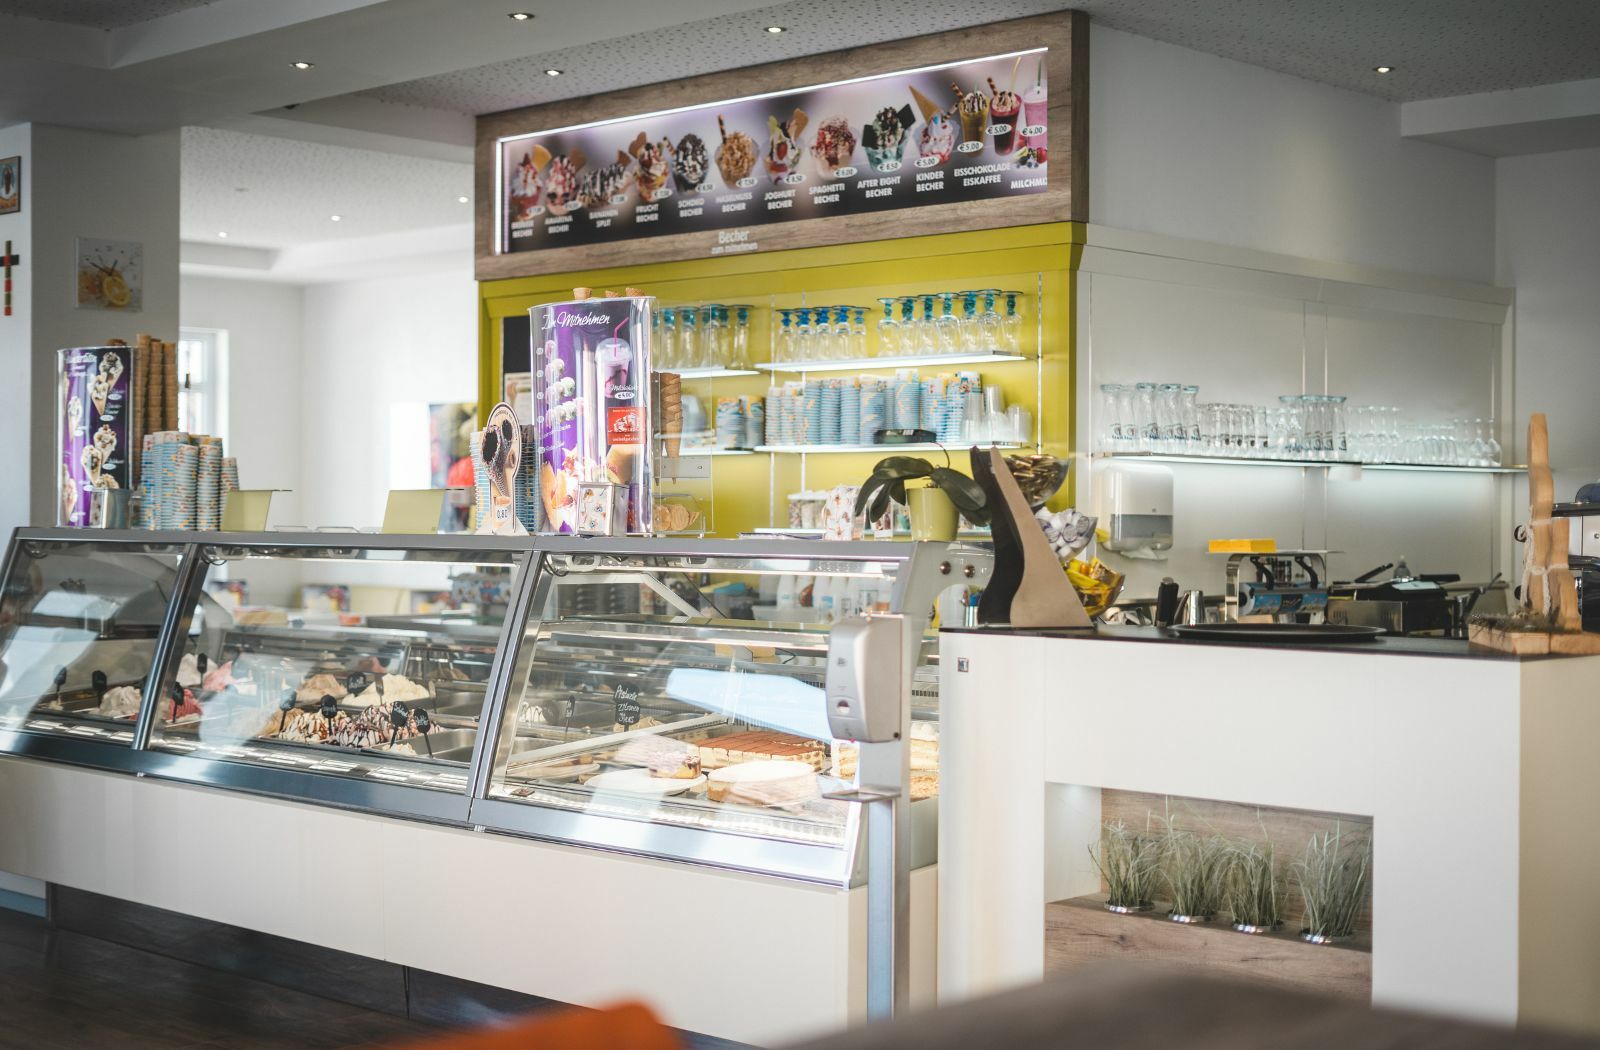 How do you open an ice cream parlor in Mallorca?